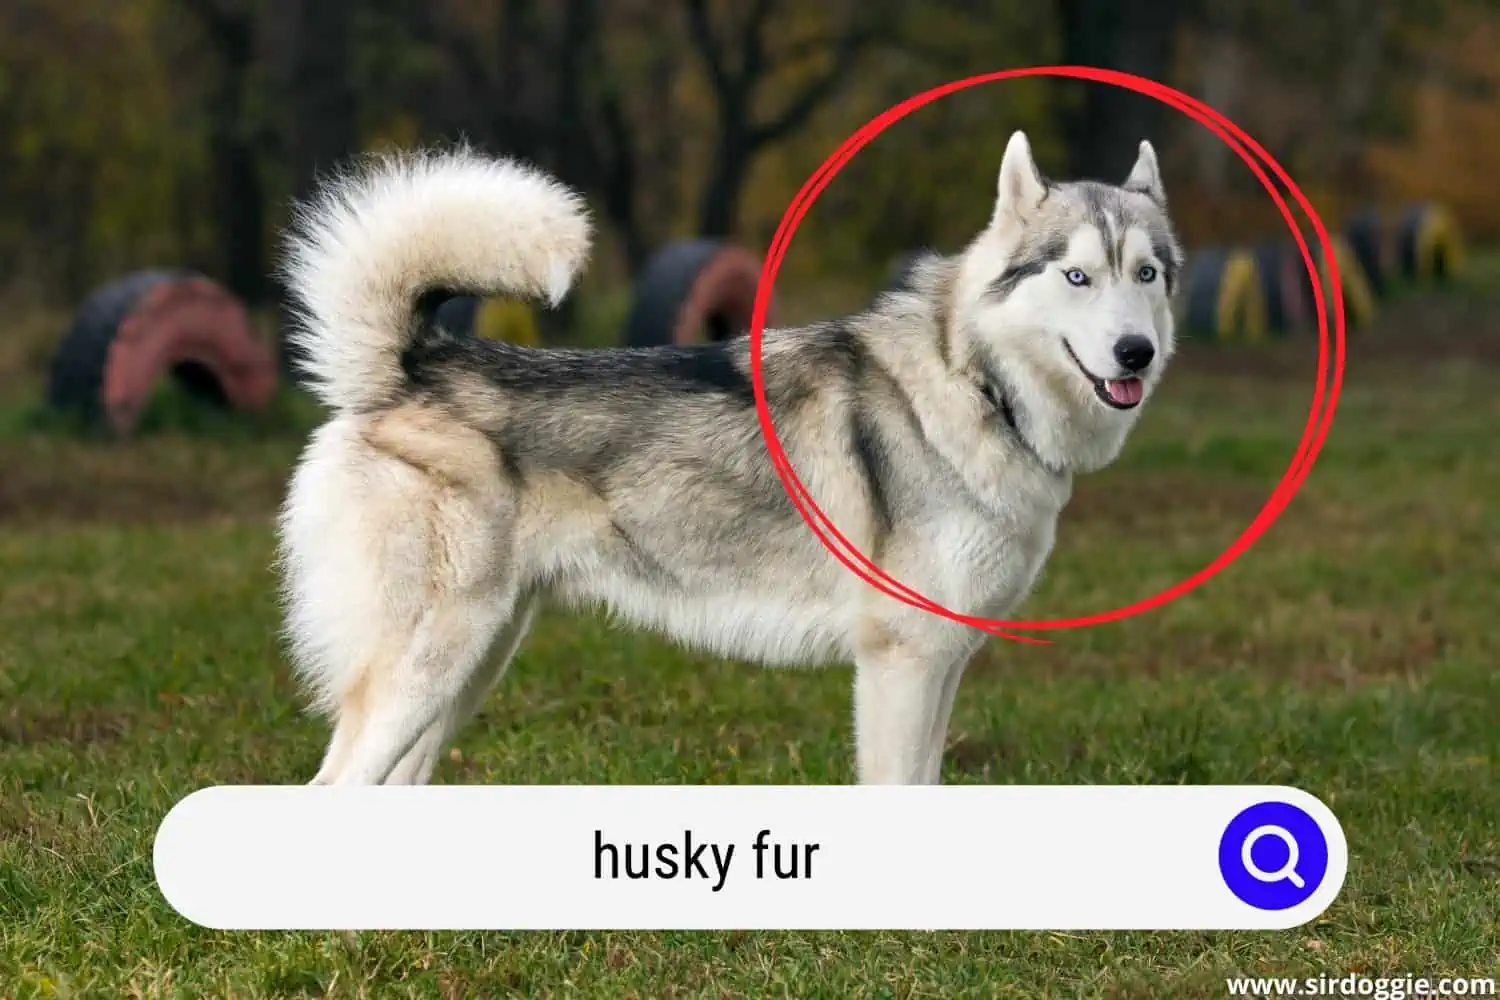 husky fur